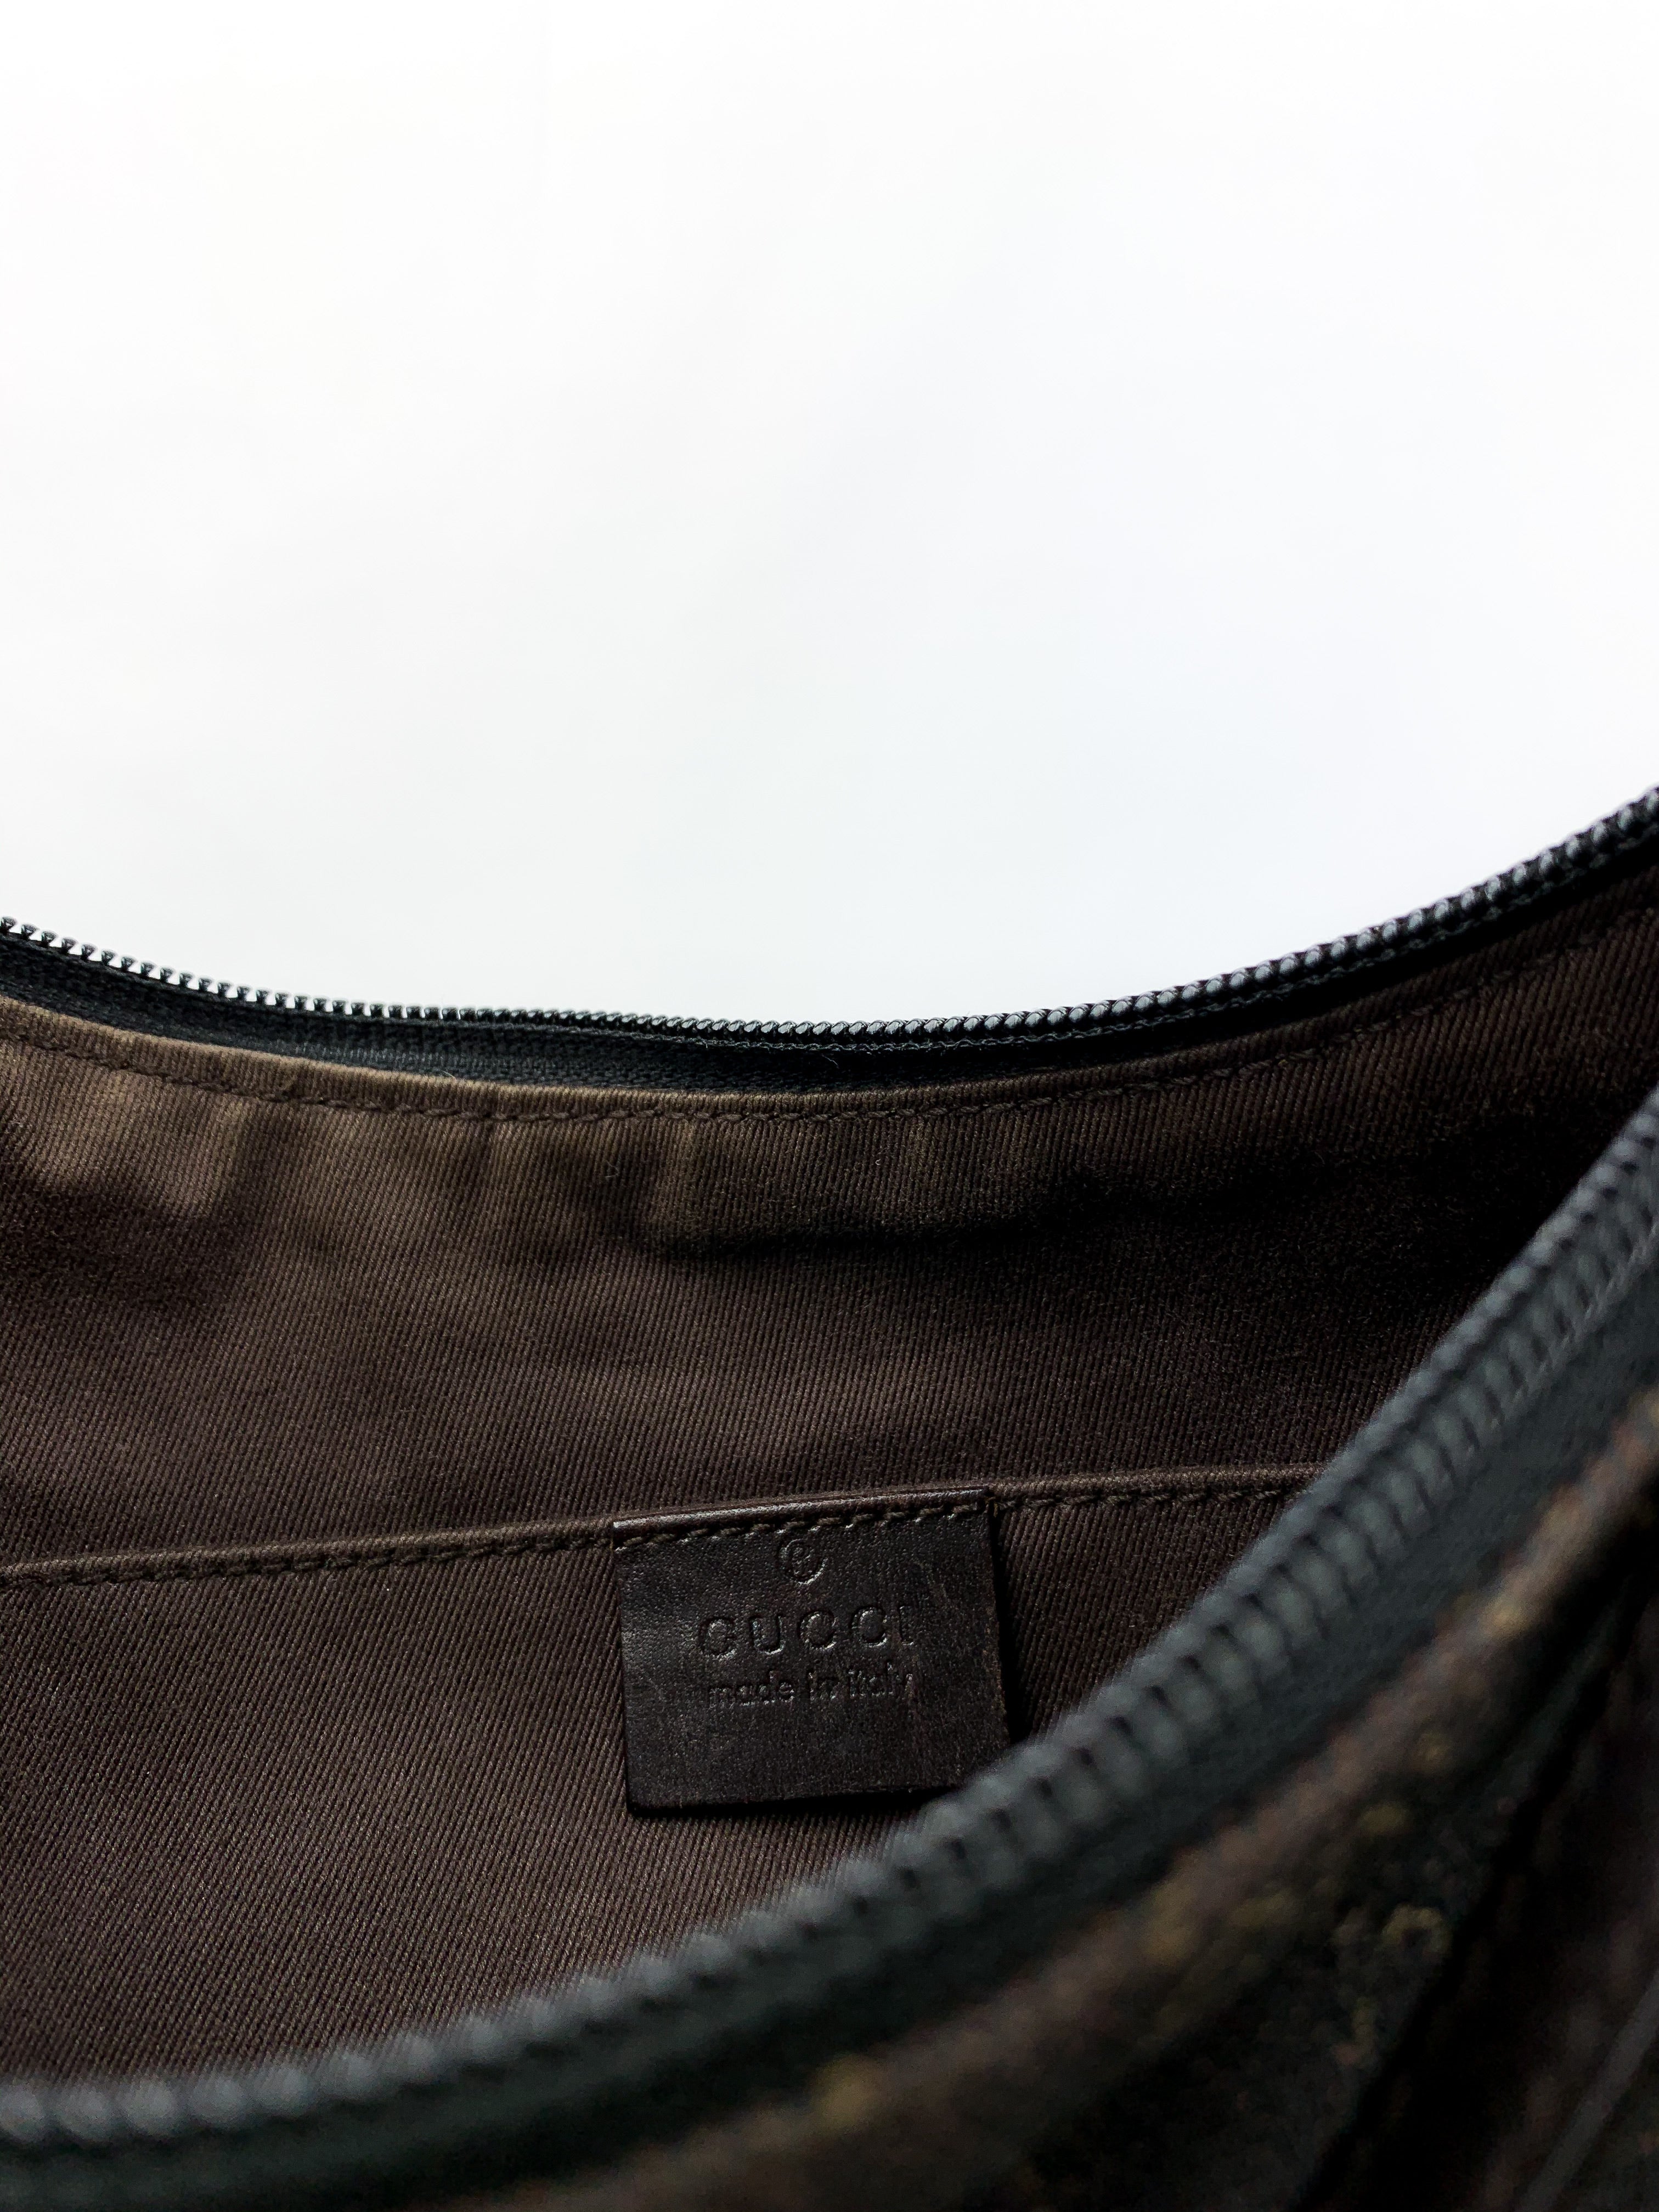 Gucci Monogram Pochette Bag in Brown